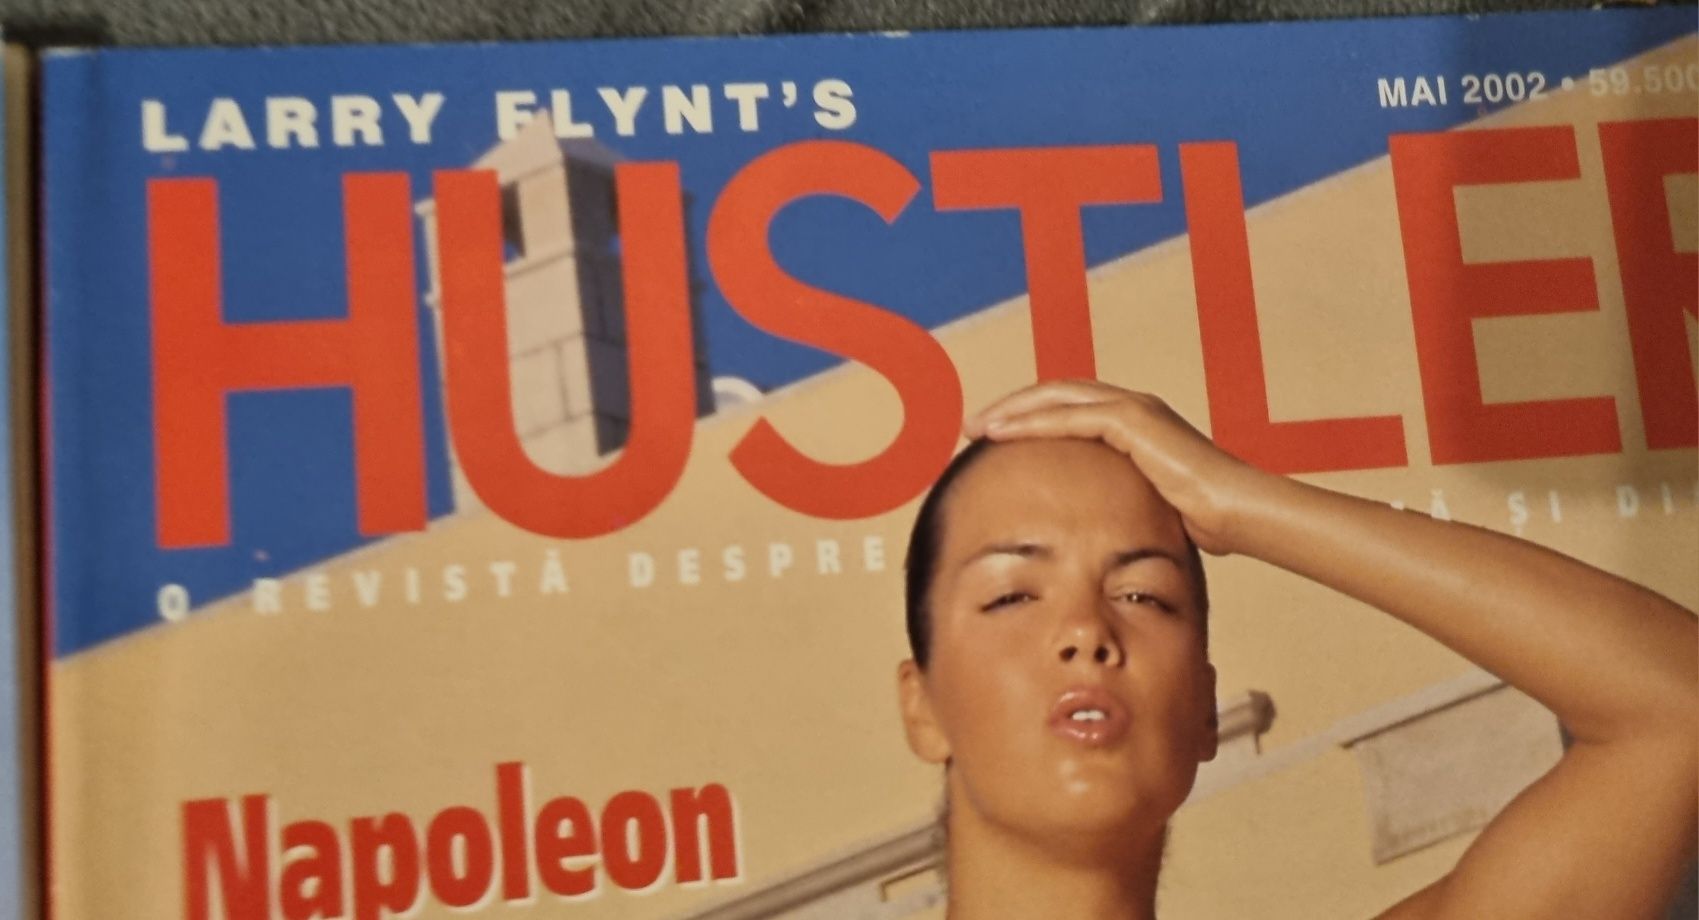 Reviste vechi FHM, Hustler